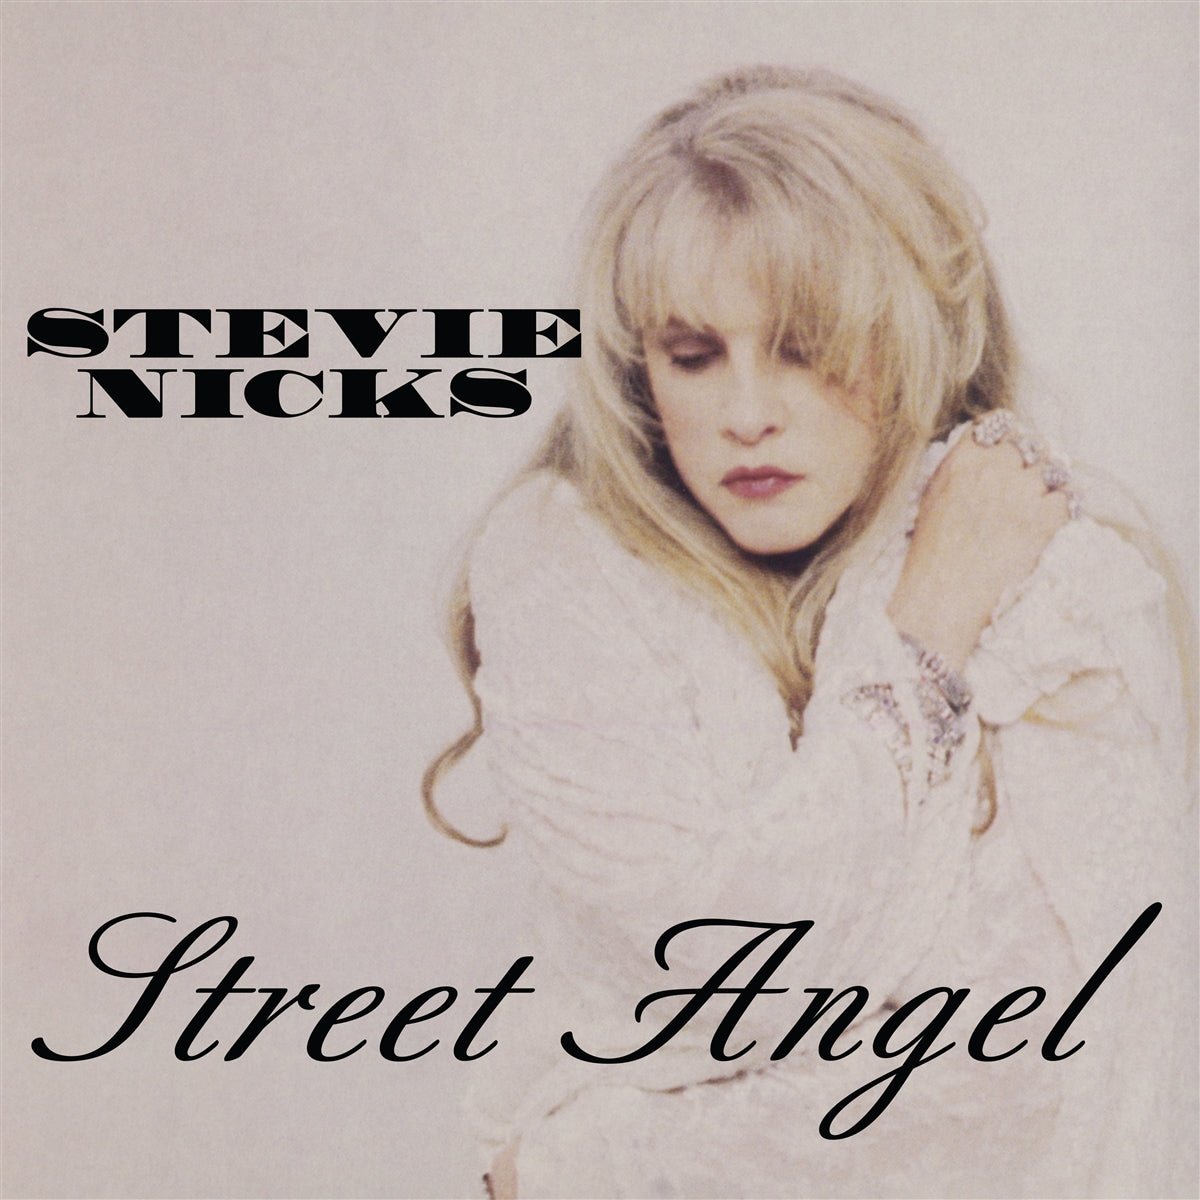 NICKS,STEVIE - STREET ANGEL Vinyl LP